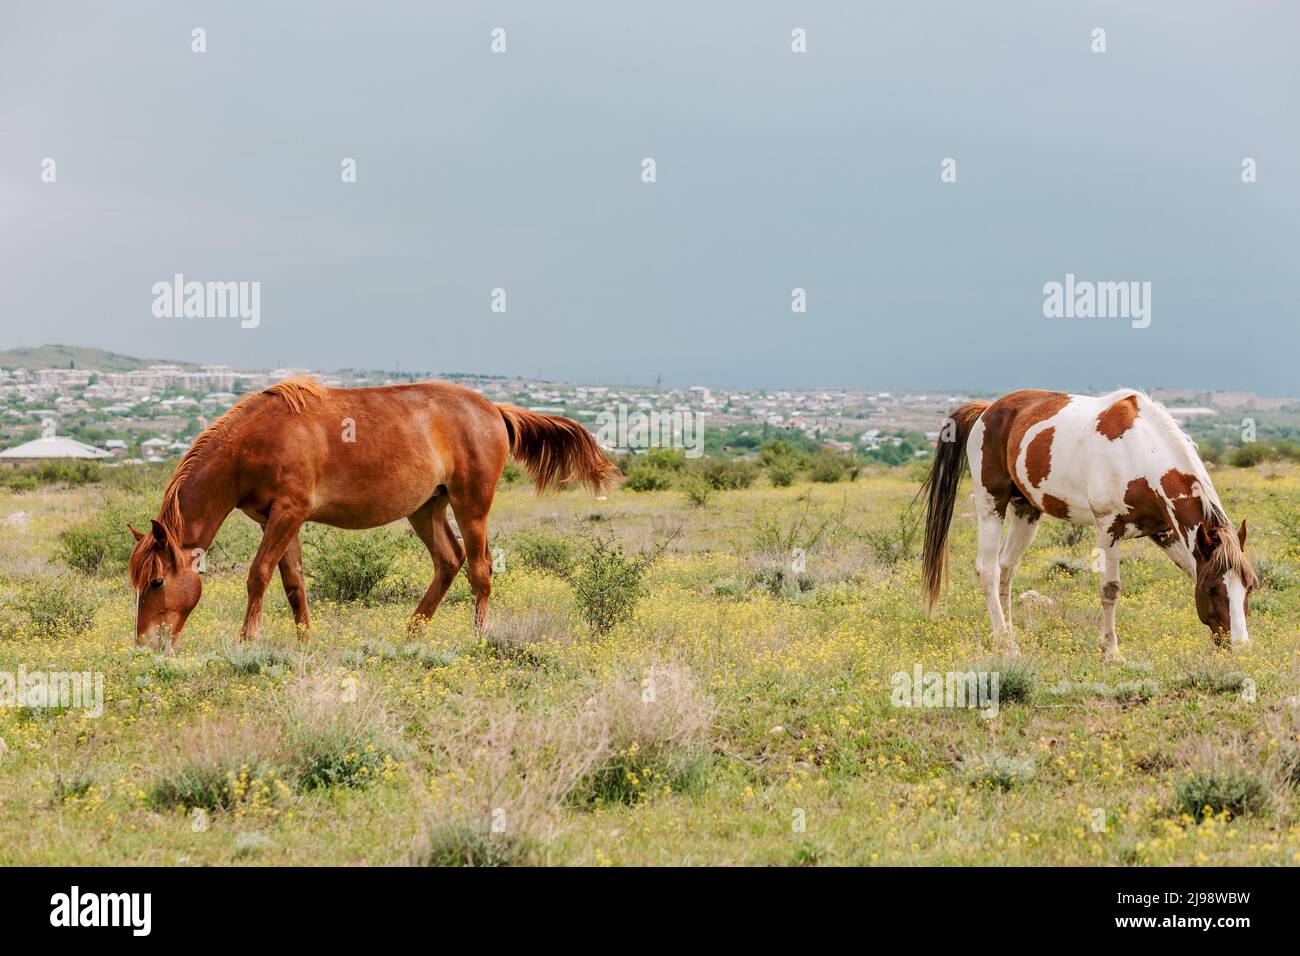 Ein Paar mehrfarbiger Pferde grasen auf einer grünen Wiese neben dem Dorf. Friedliche Szene mit Pferden Stockfoto